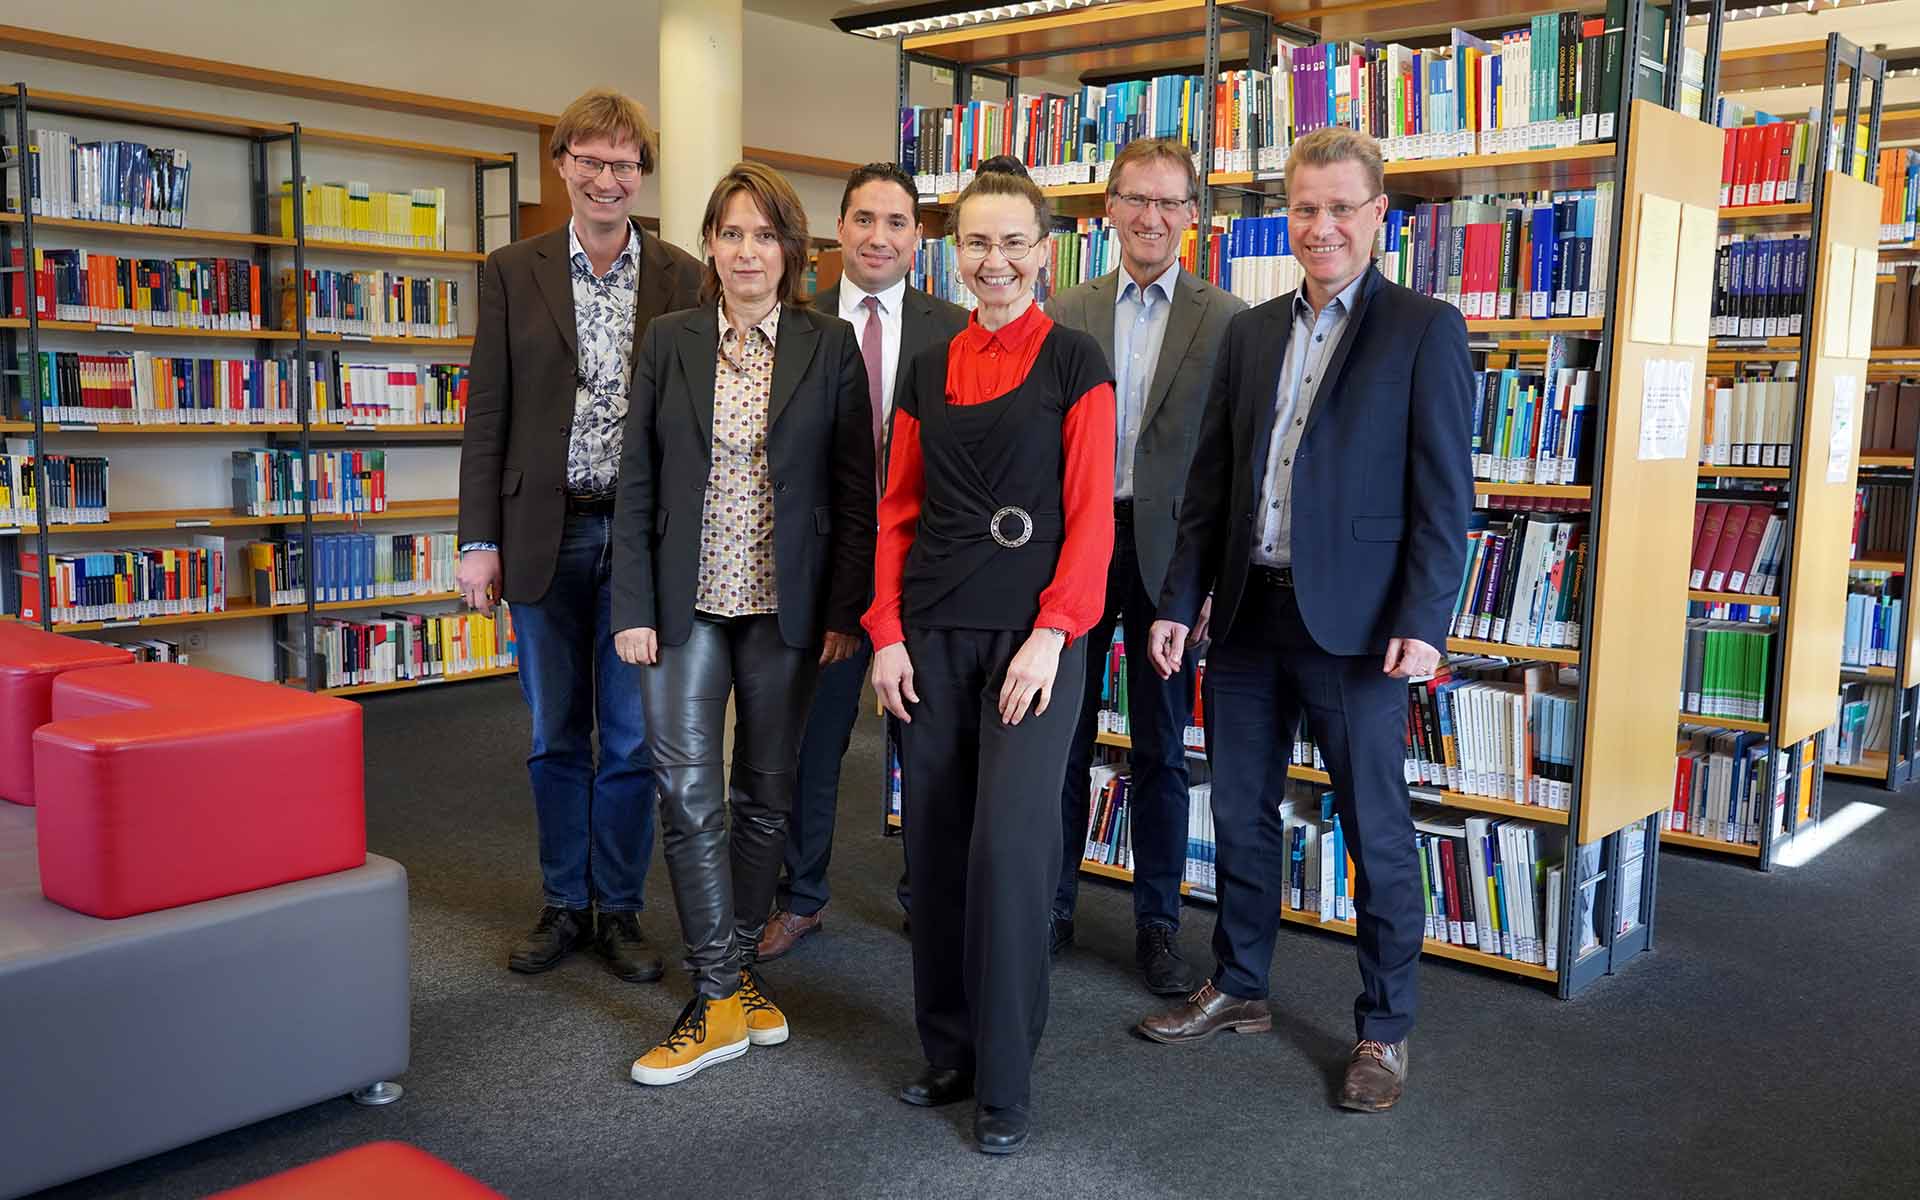 Zwei Professorinnen und vier Professoren stehen nebeneinander vor Bücherregalen in der Bibliothek und lächeln in die Kamera